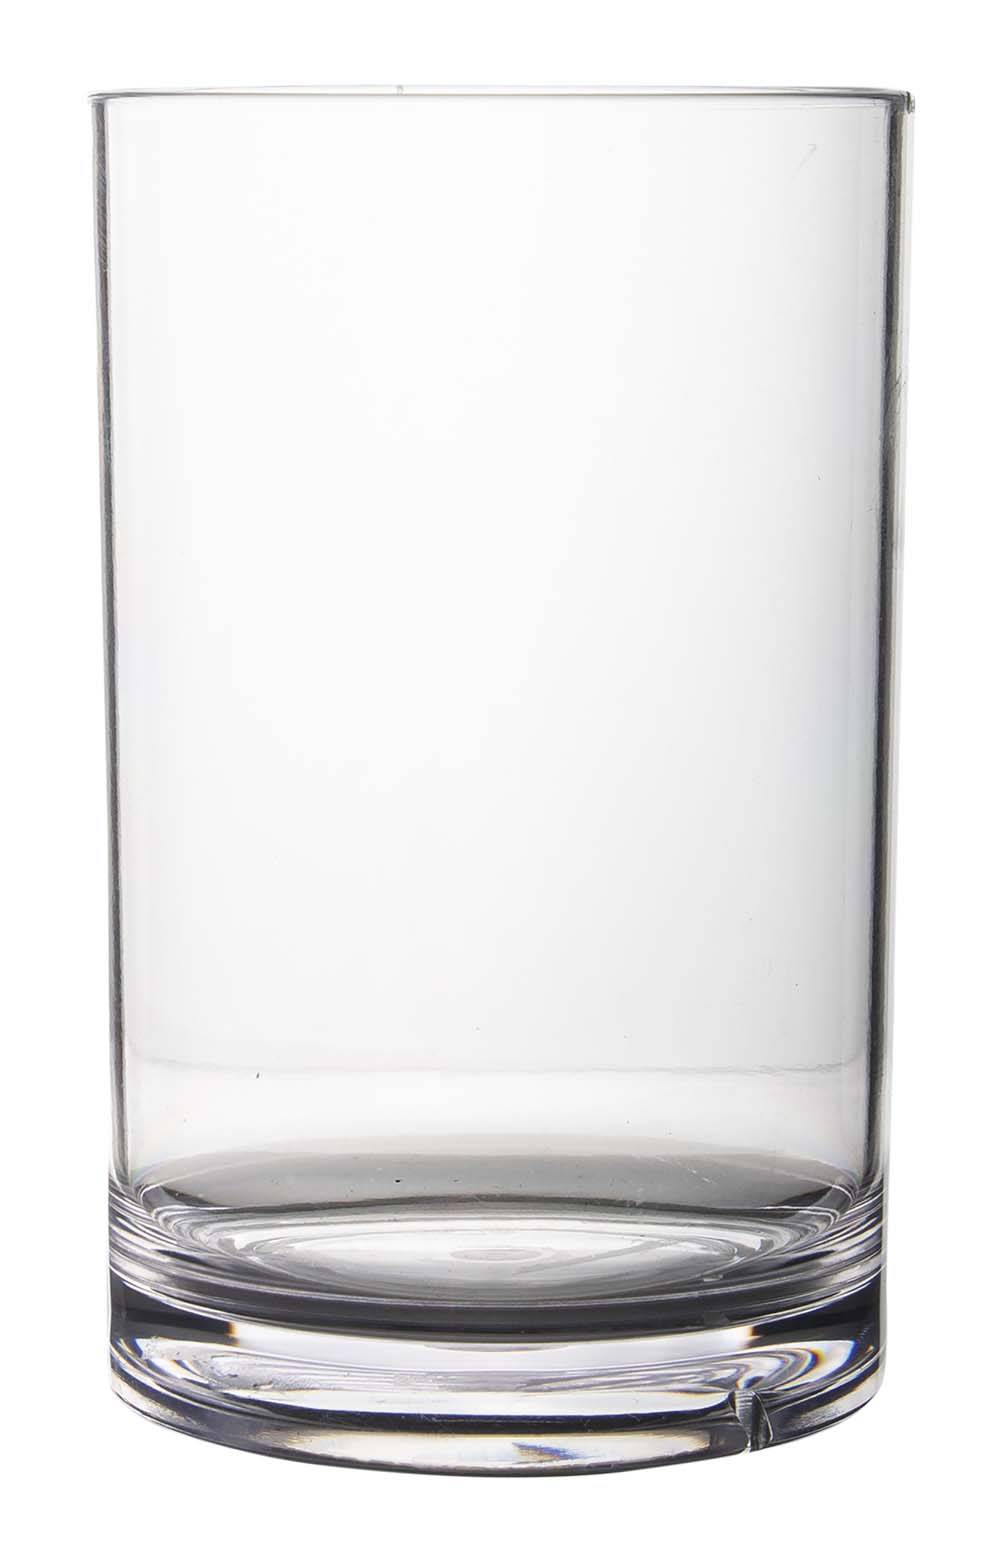 6969940 Een stijlvol drinkglas. Vrijwel onbreekbaar door hoogwaardig SAN materiaal. Zeer gemakkelijk te reinigen en langdurig te gebruiken, wat het glas erg duurzaam maakt. Daarnaast is het drinkglas lichtgewicht, krasbestendig en BPA vrij. Inhoud: 330 ml.